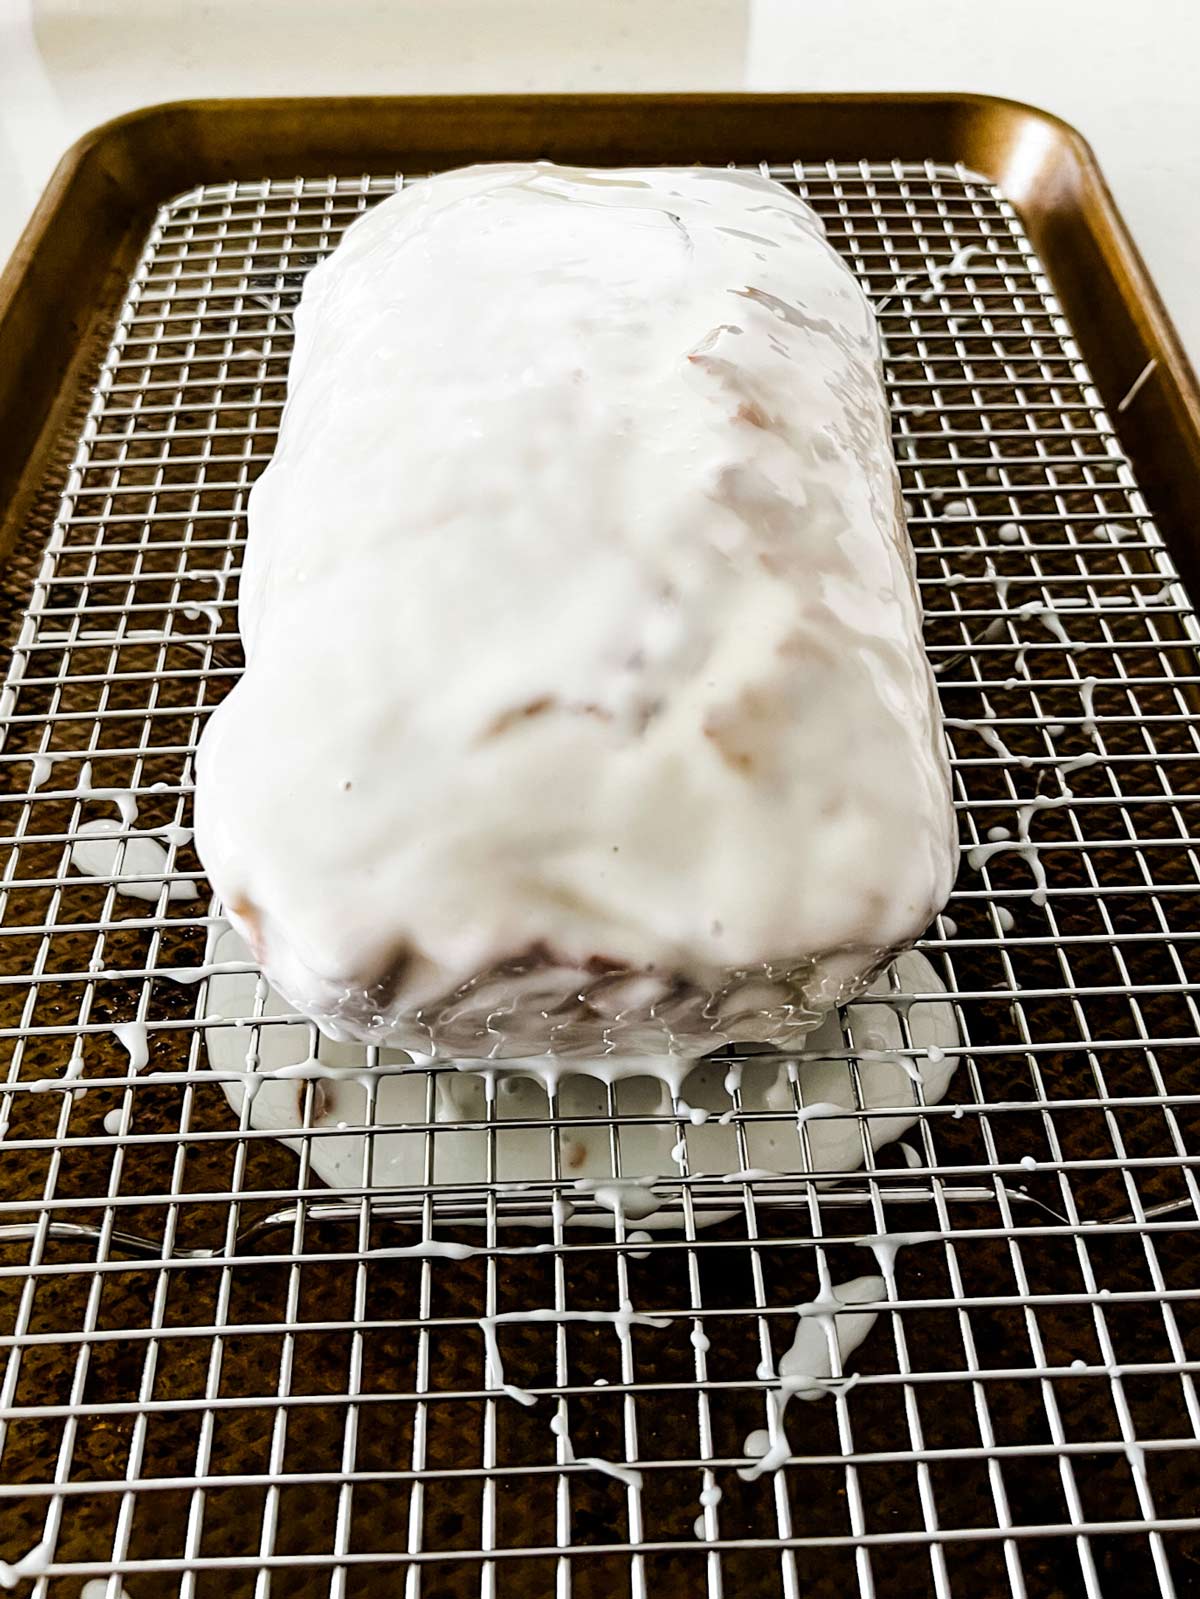 A glazed lemon loaf on a cooling rack set on top of a baking sheet.